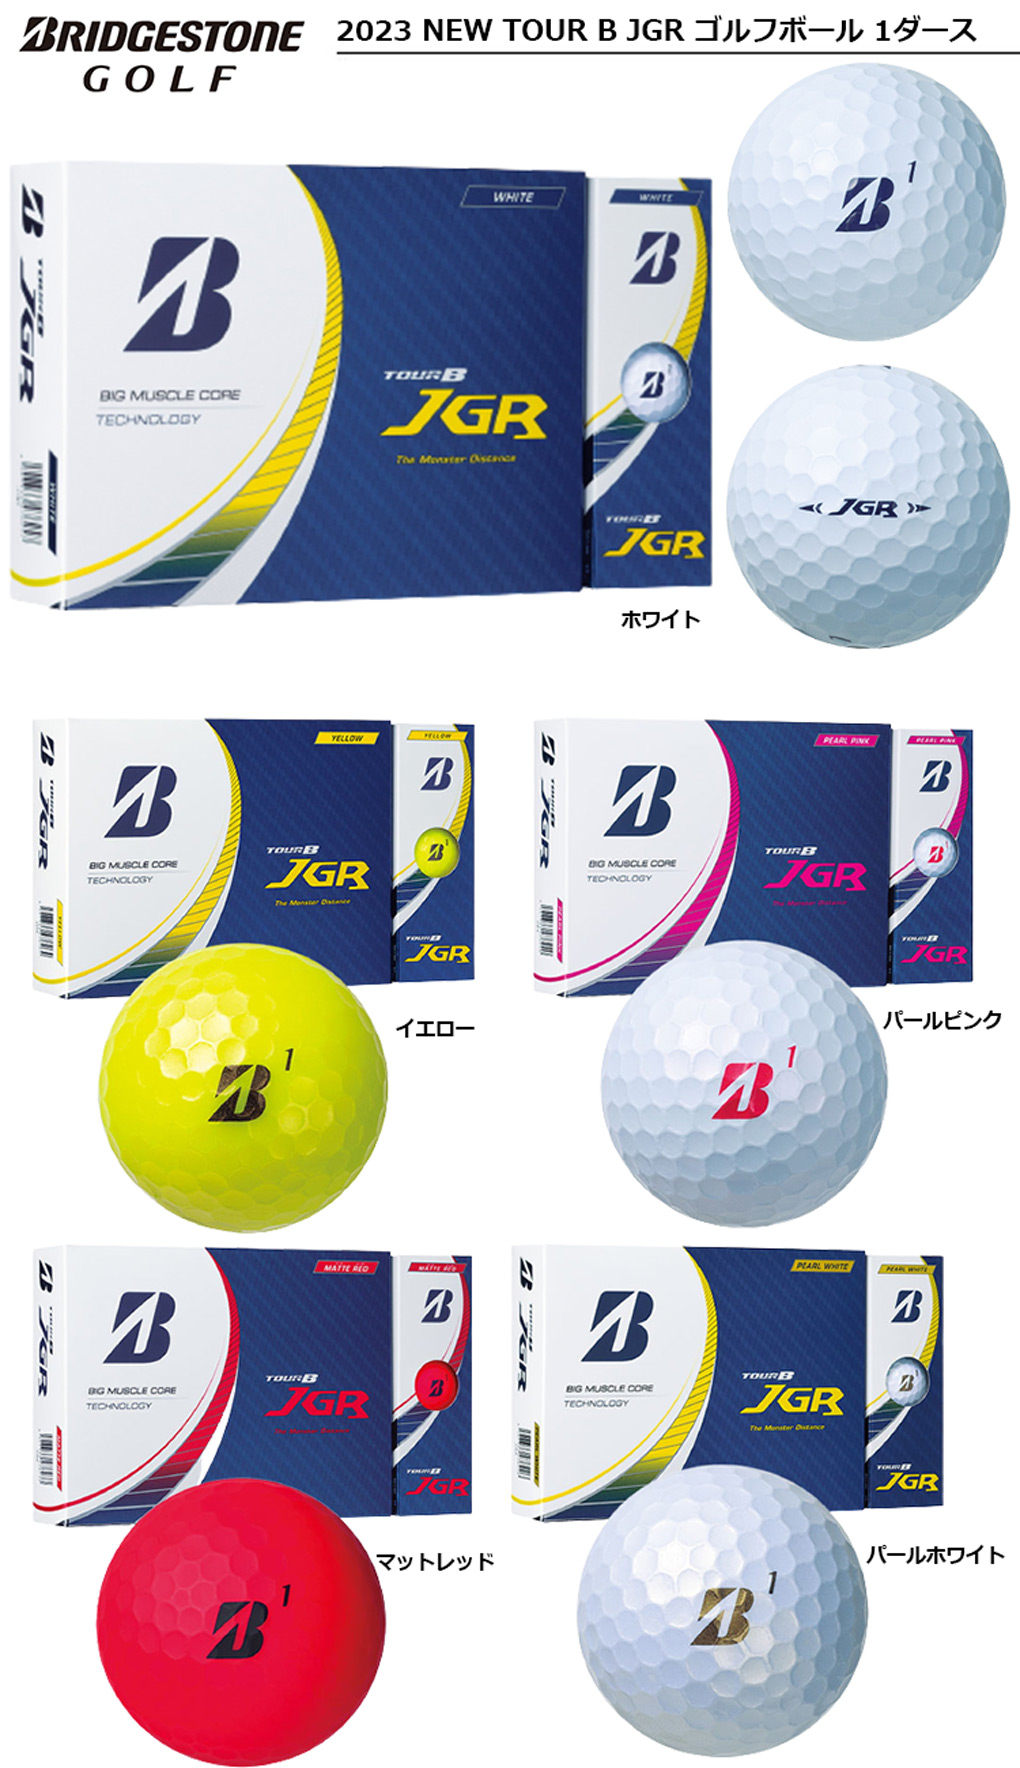 【楽天市場】ブリヂストン 2023 NEW TOUR B JGR ゴルフボール 1